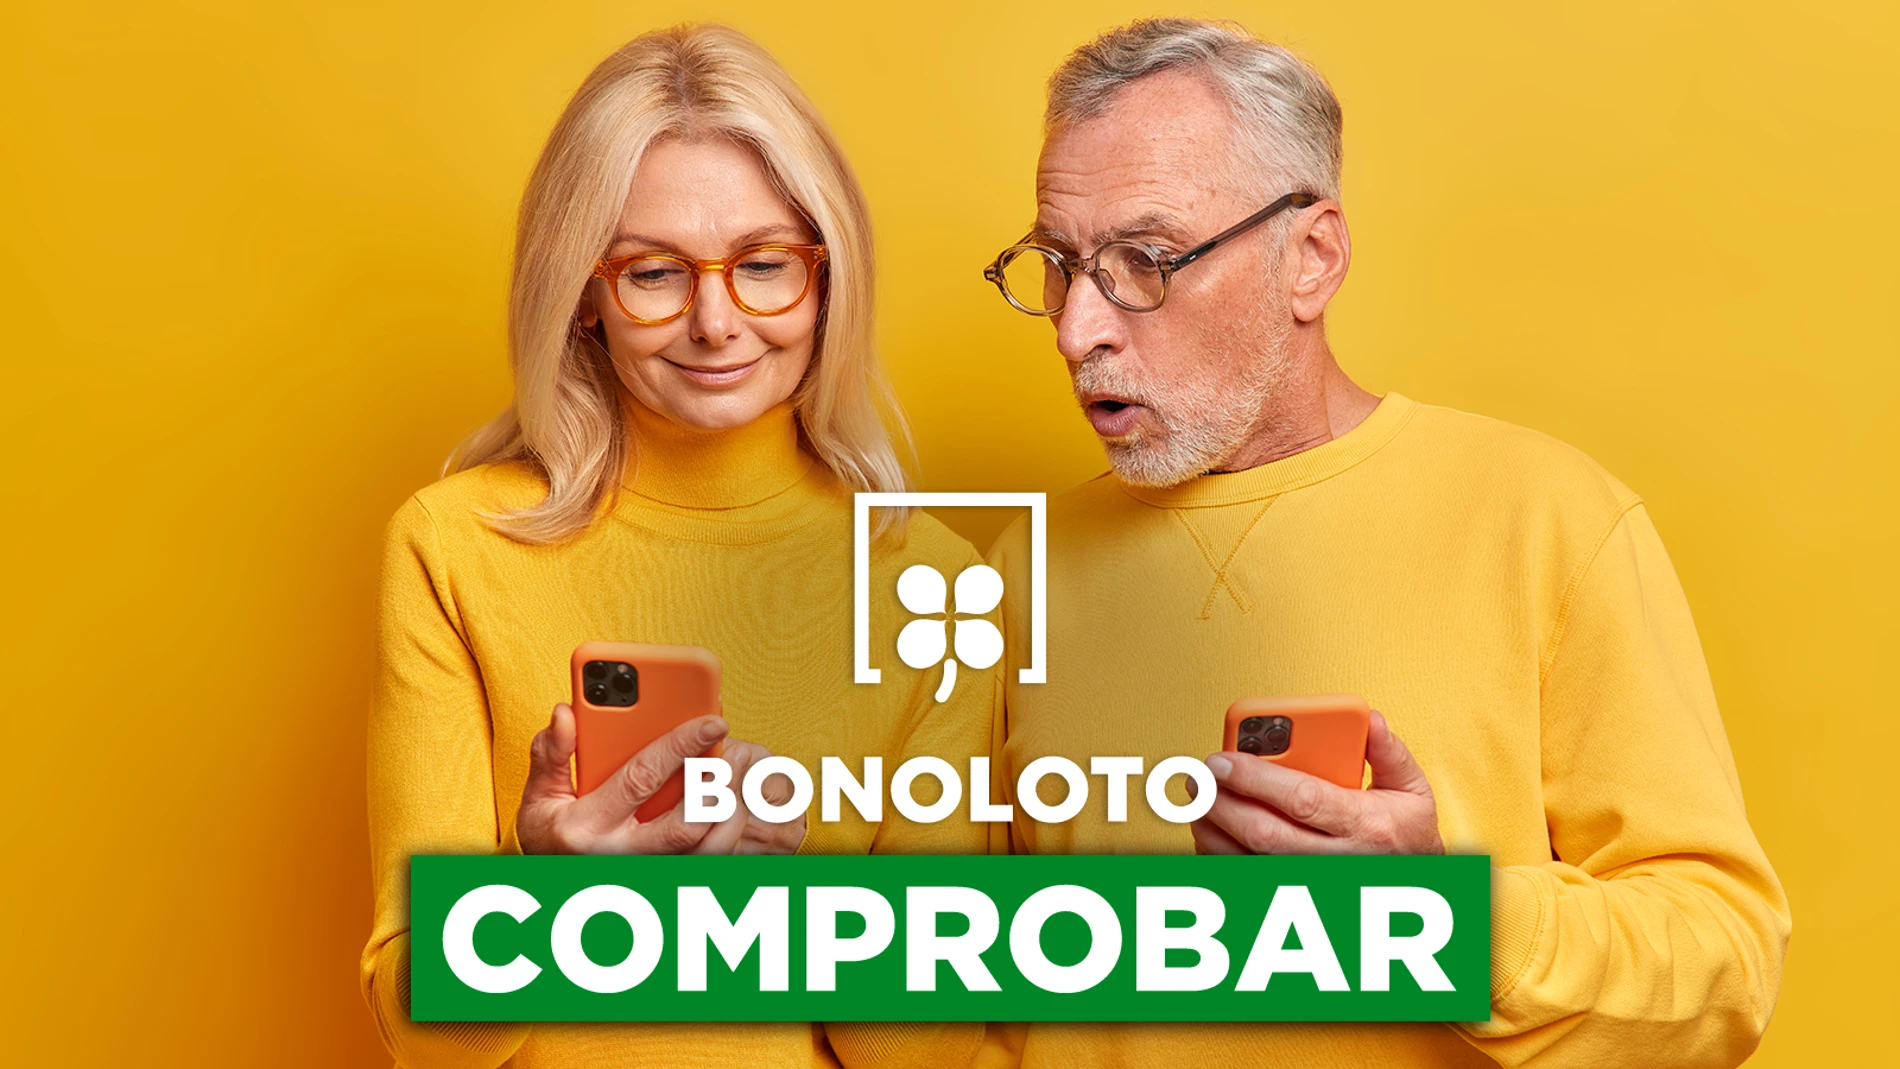 Bonoloto: comprobar hoy, viernes 16 de septiembre de 2022